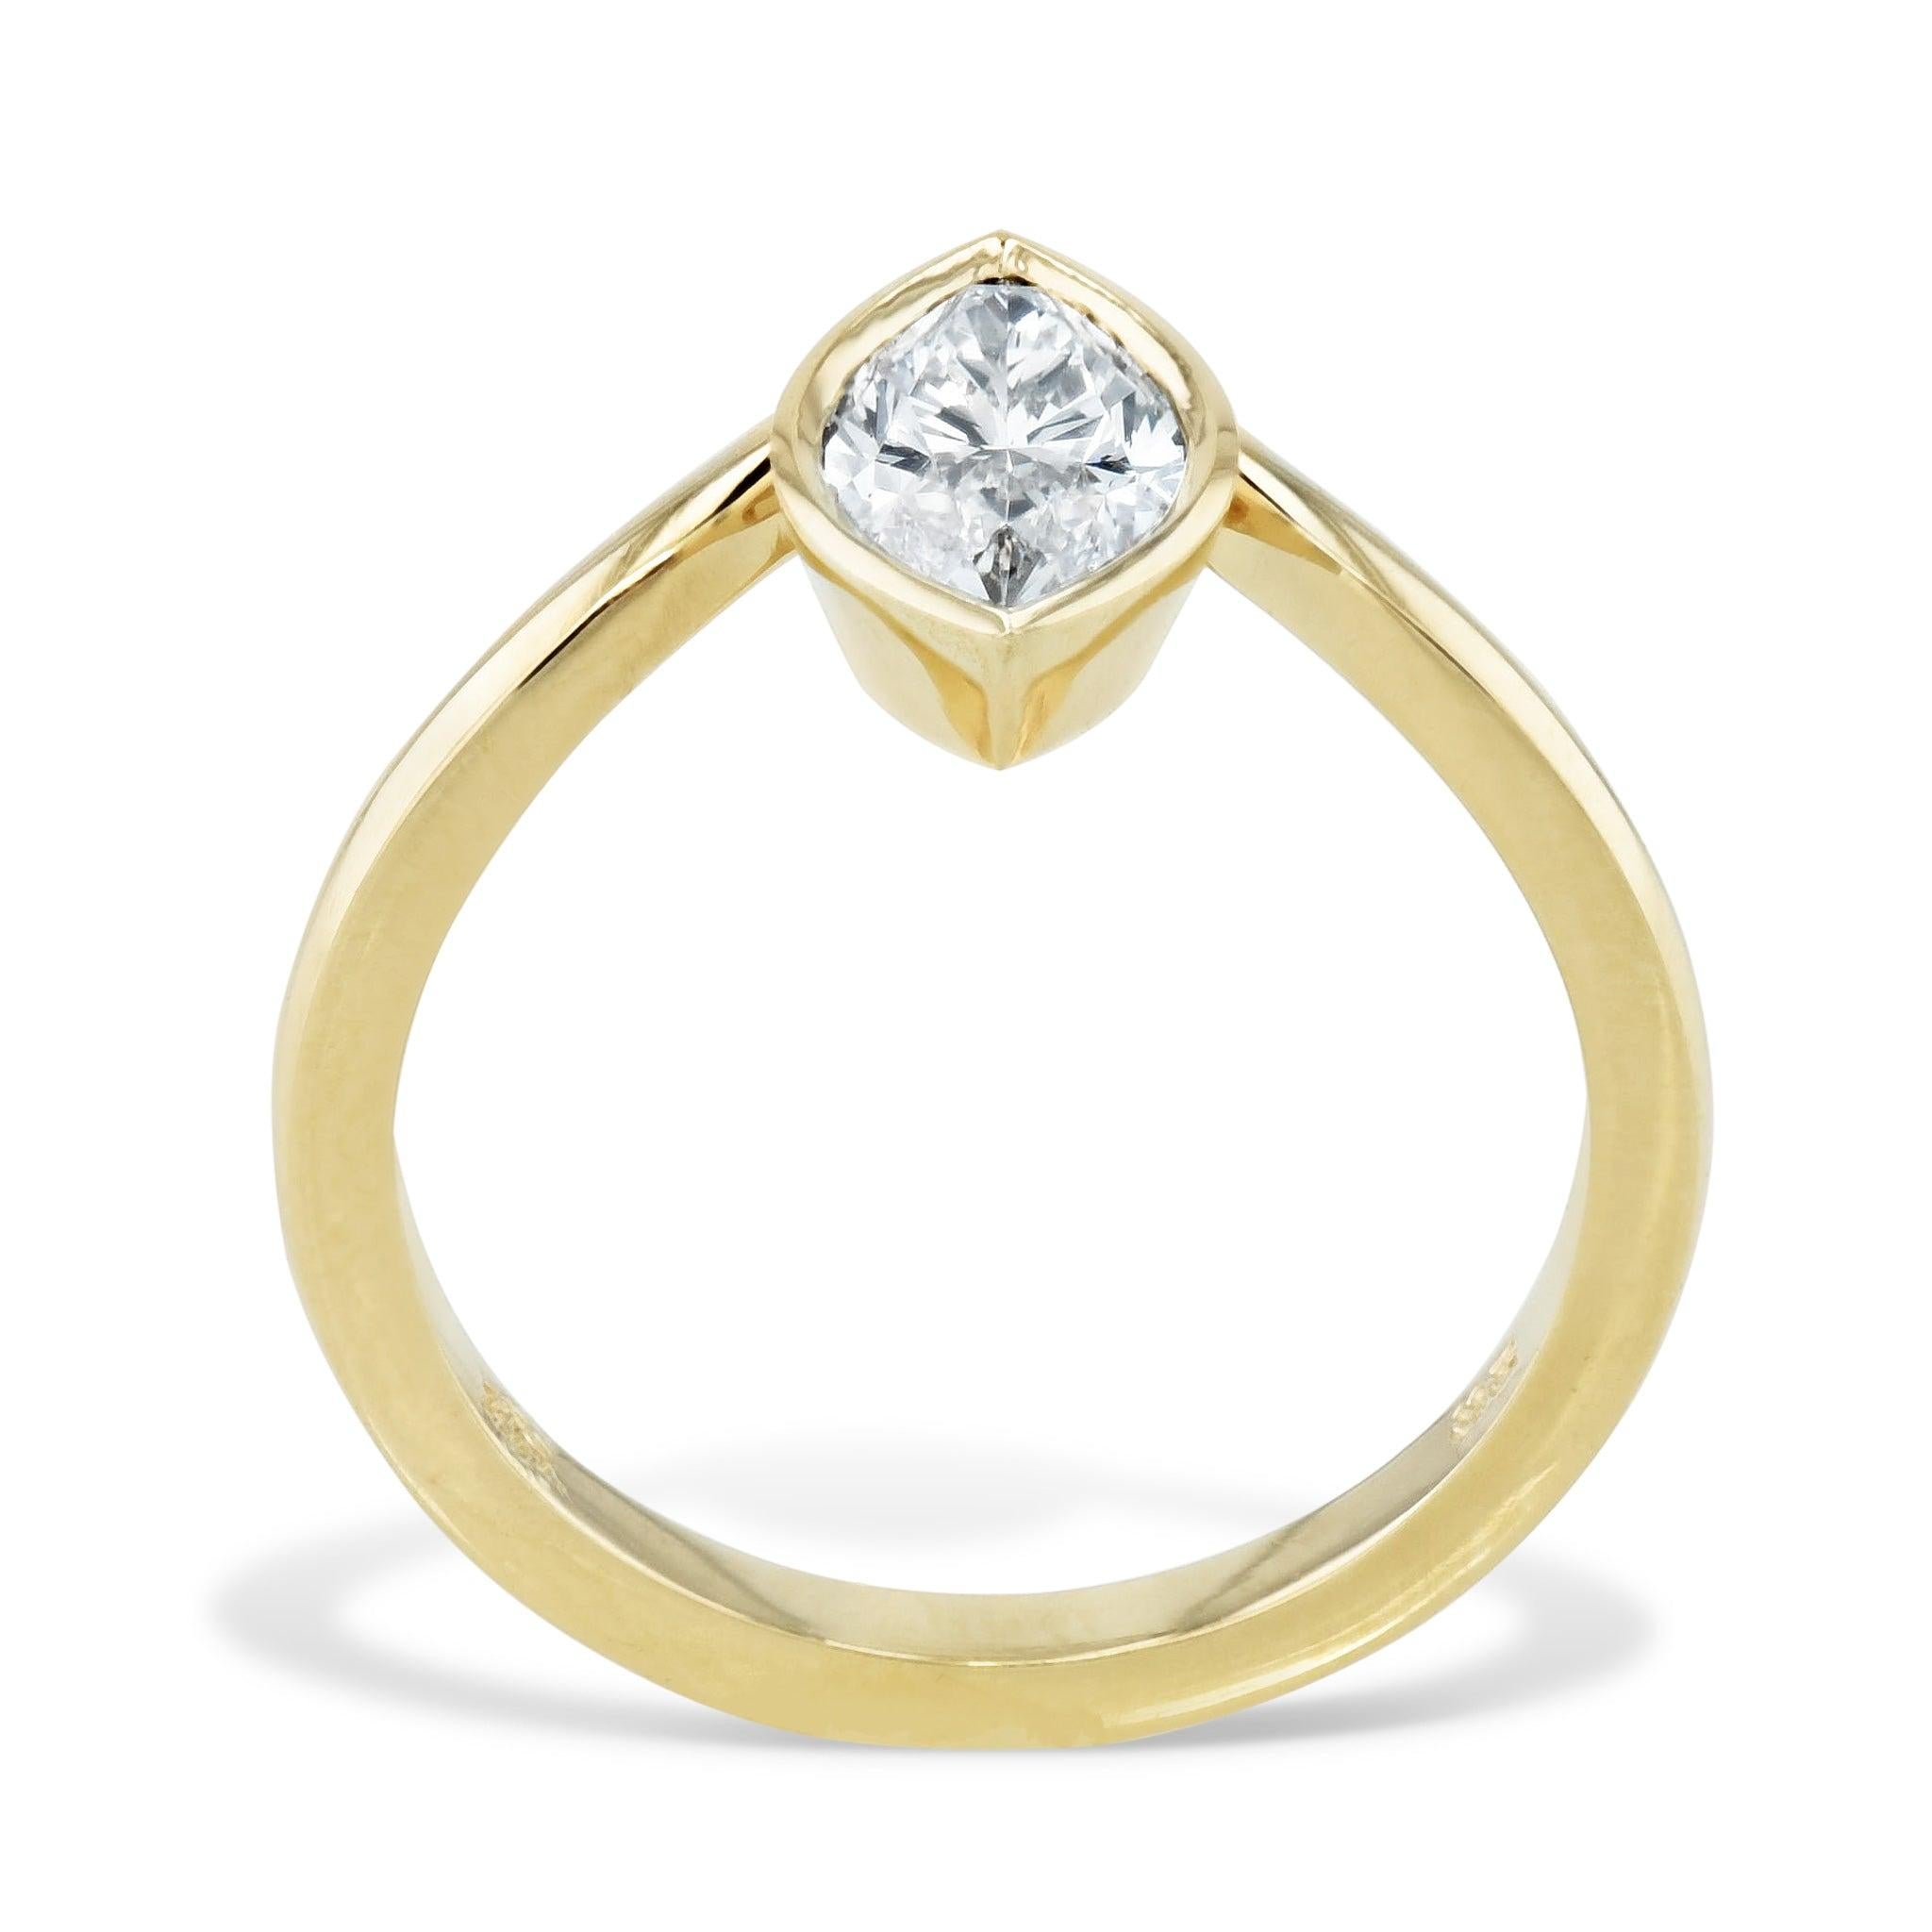 Découvrez la bague de fiançailles en or jaune à diamant marquise de la Collection H&H. 
Cette bague est fabriquée à la main en or jaune 18 carats et comporte un diamant central serti en chaton avec le numéro GIA 5201384236. Elle est unique en son